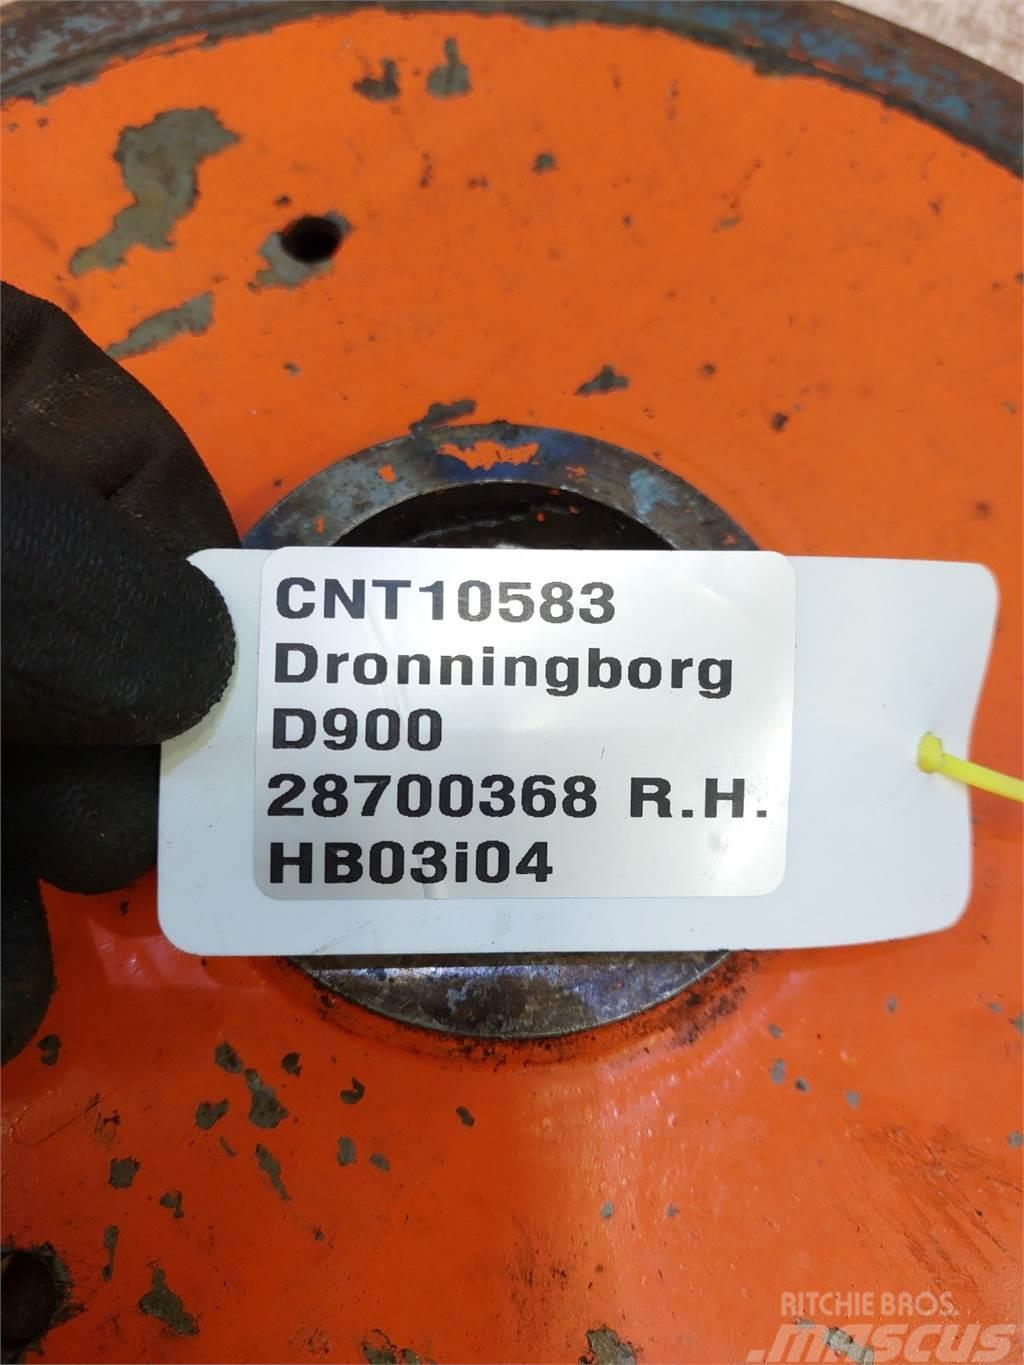 Dronningborg D900 Andre landbrugsmaskiner